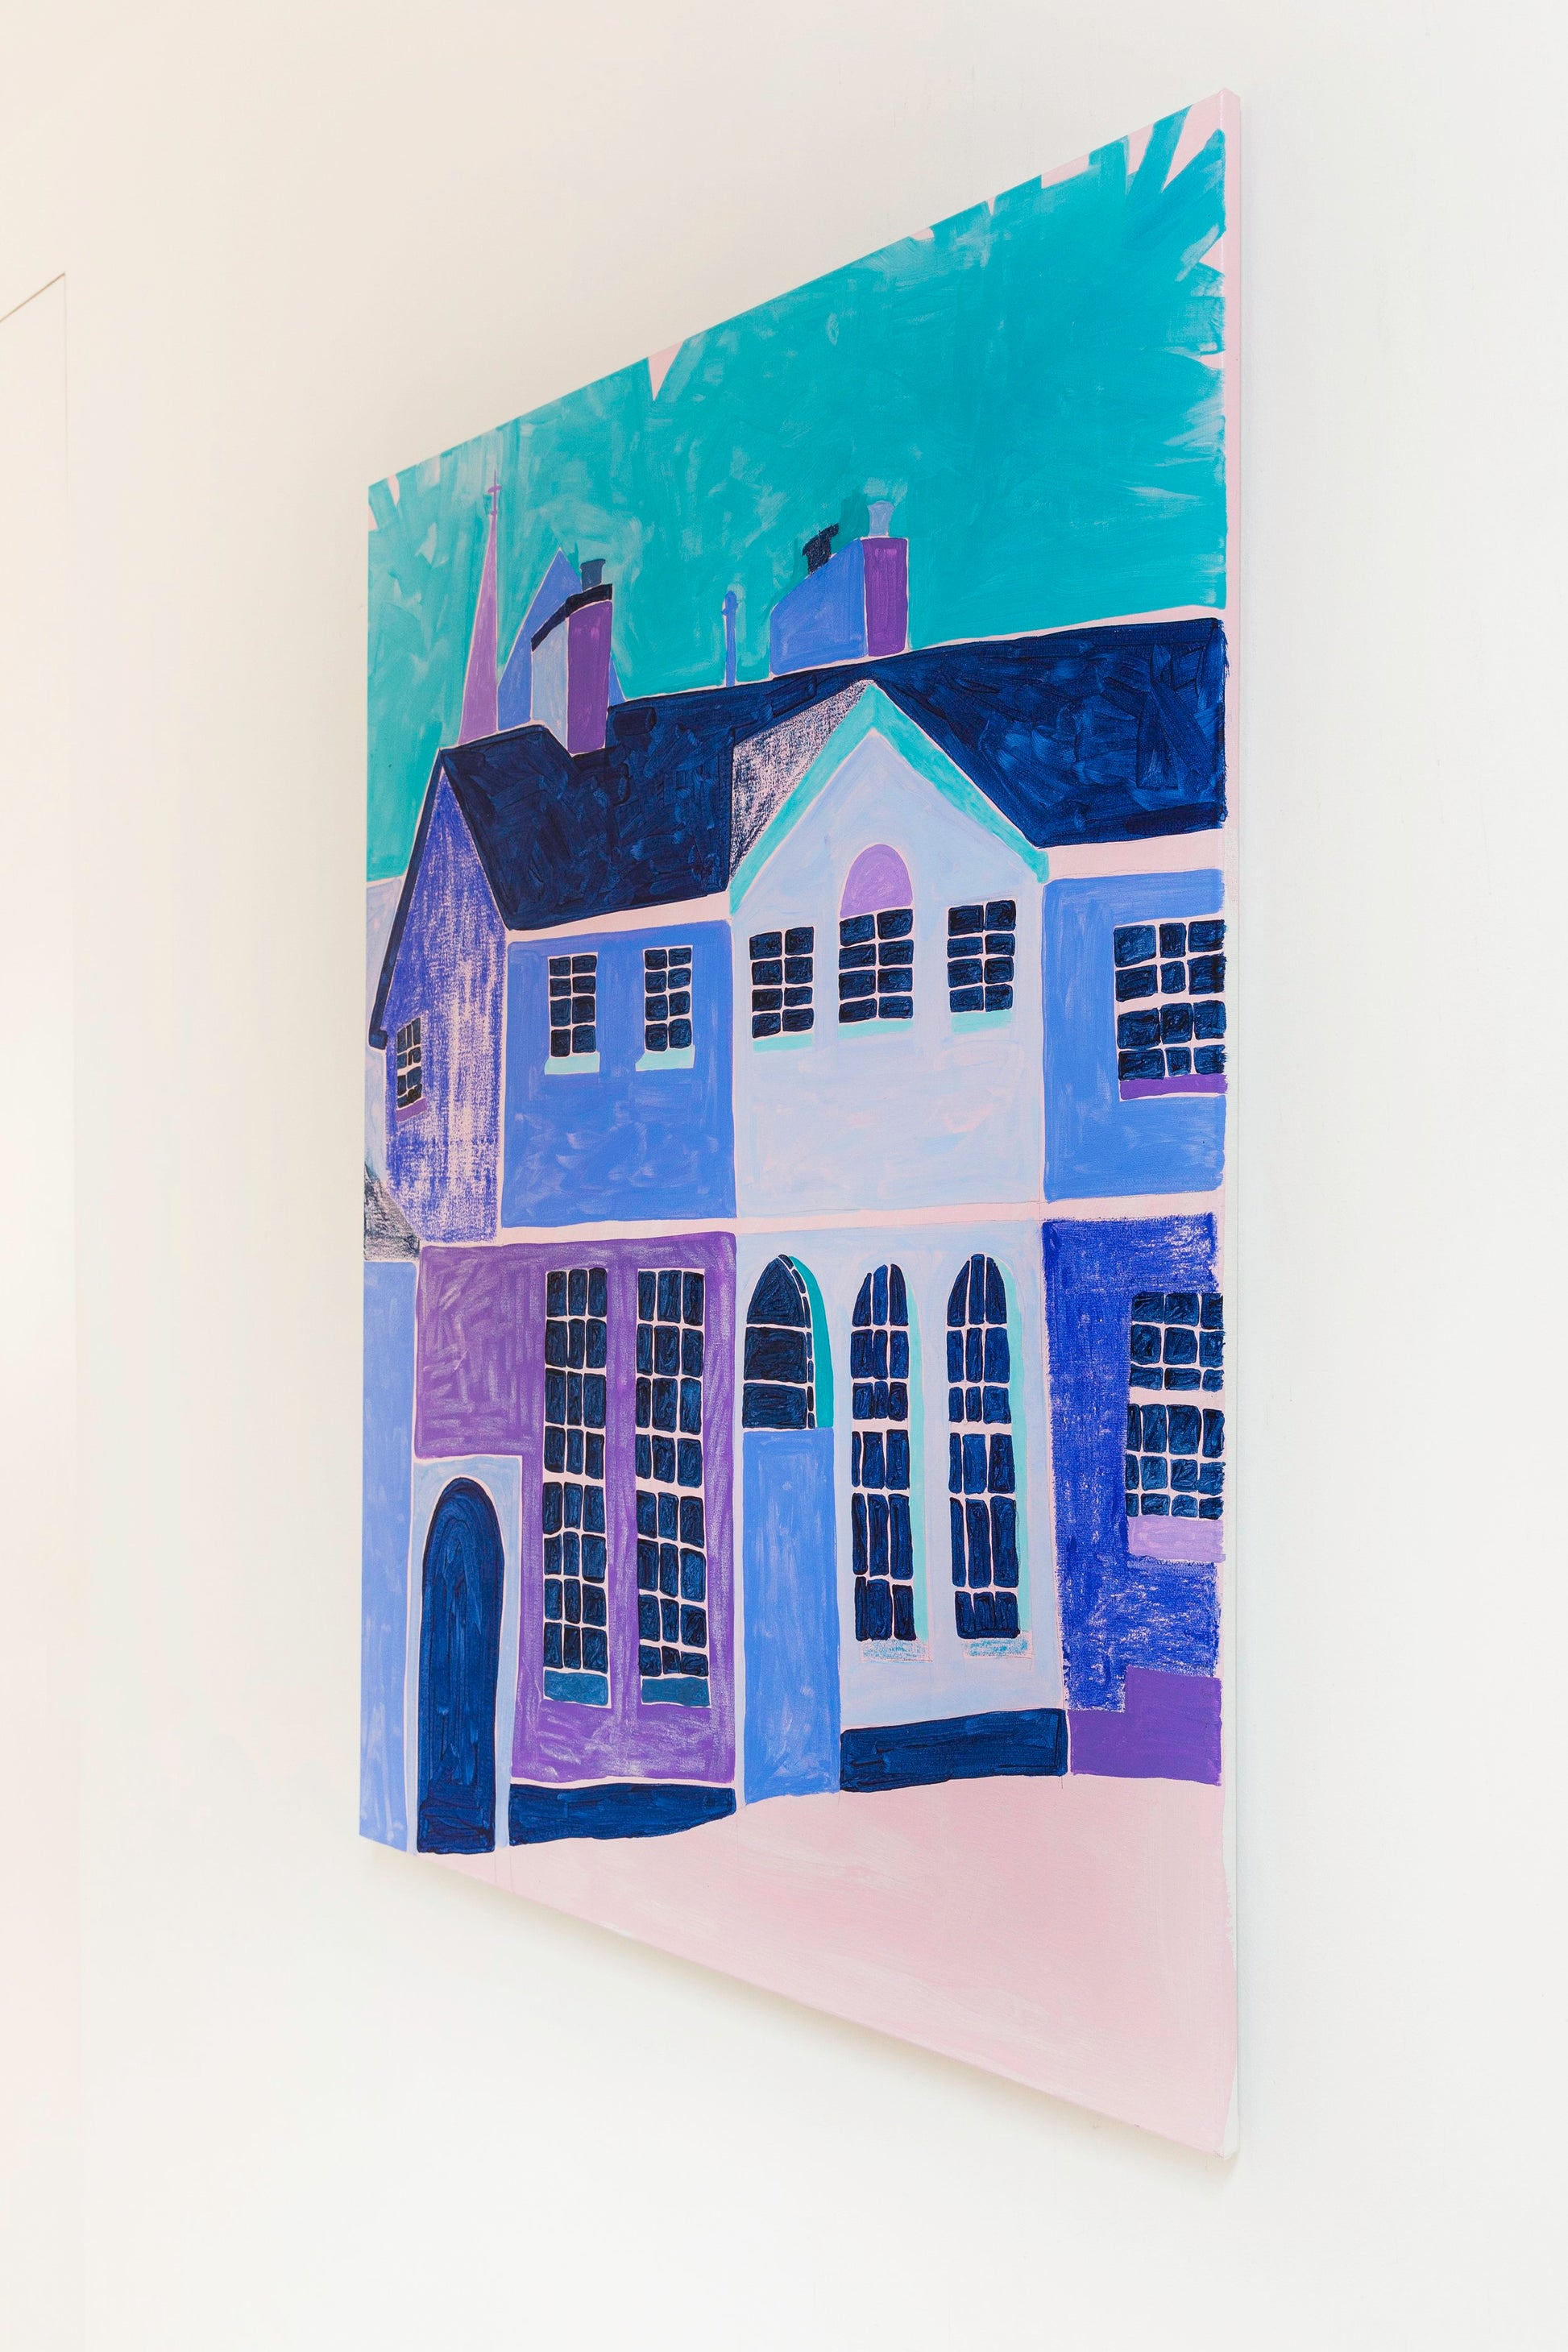 'Aldersgate Terrace' by Elizabeth Power